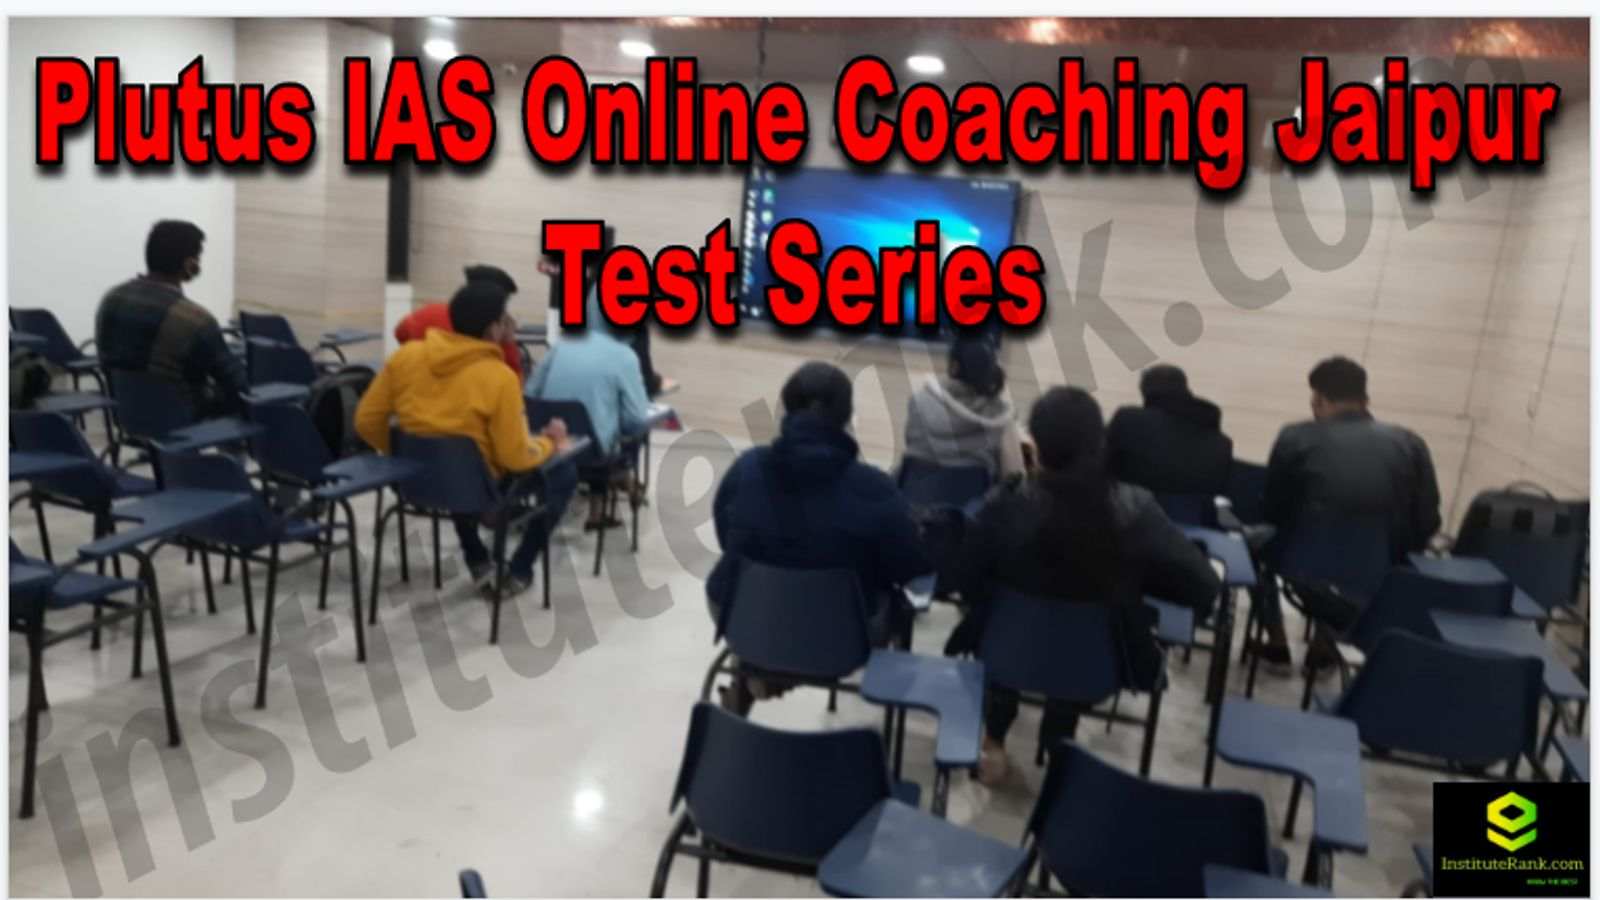 Plutus IAS Online Coaching Jaipur Reviews Test Series